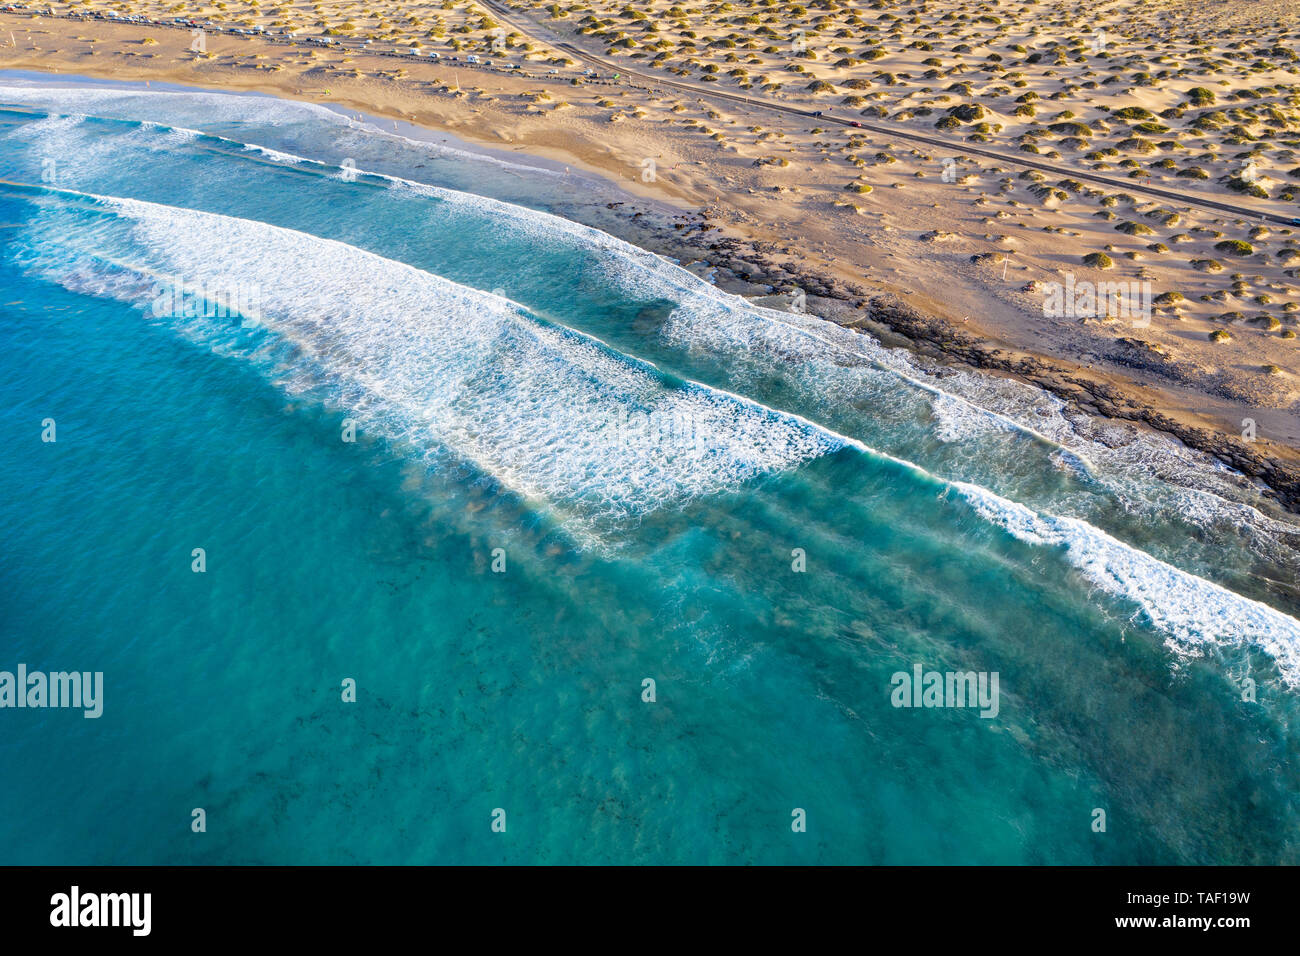 Spagna Isole Canarie Lanzarote, Caleta de Famara, Playa de Famara, onde sulla spiaggia sabbiosa, vista aerea Foto Stock